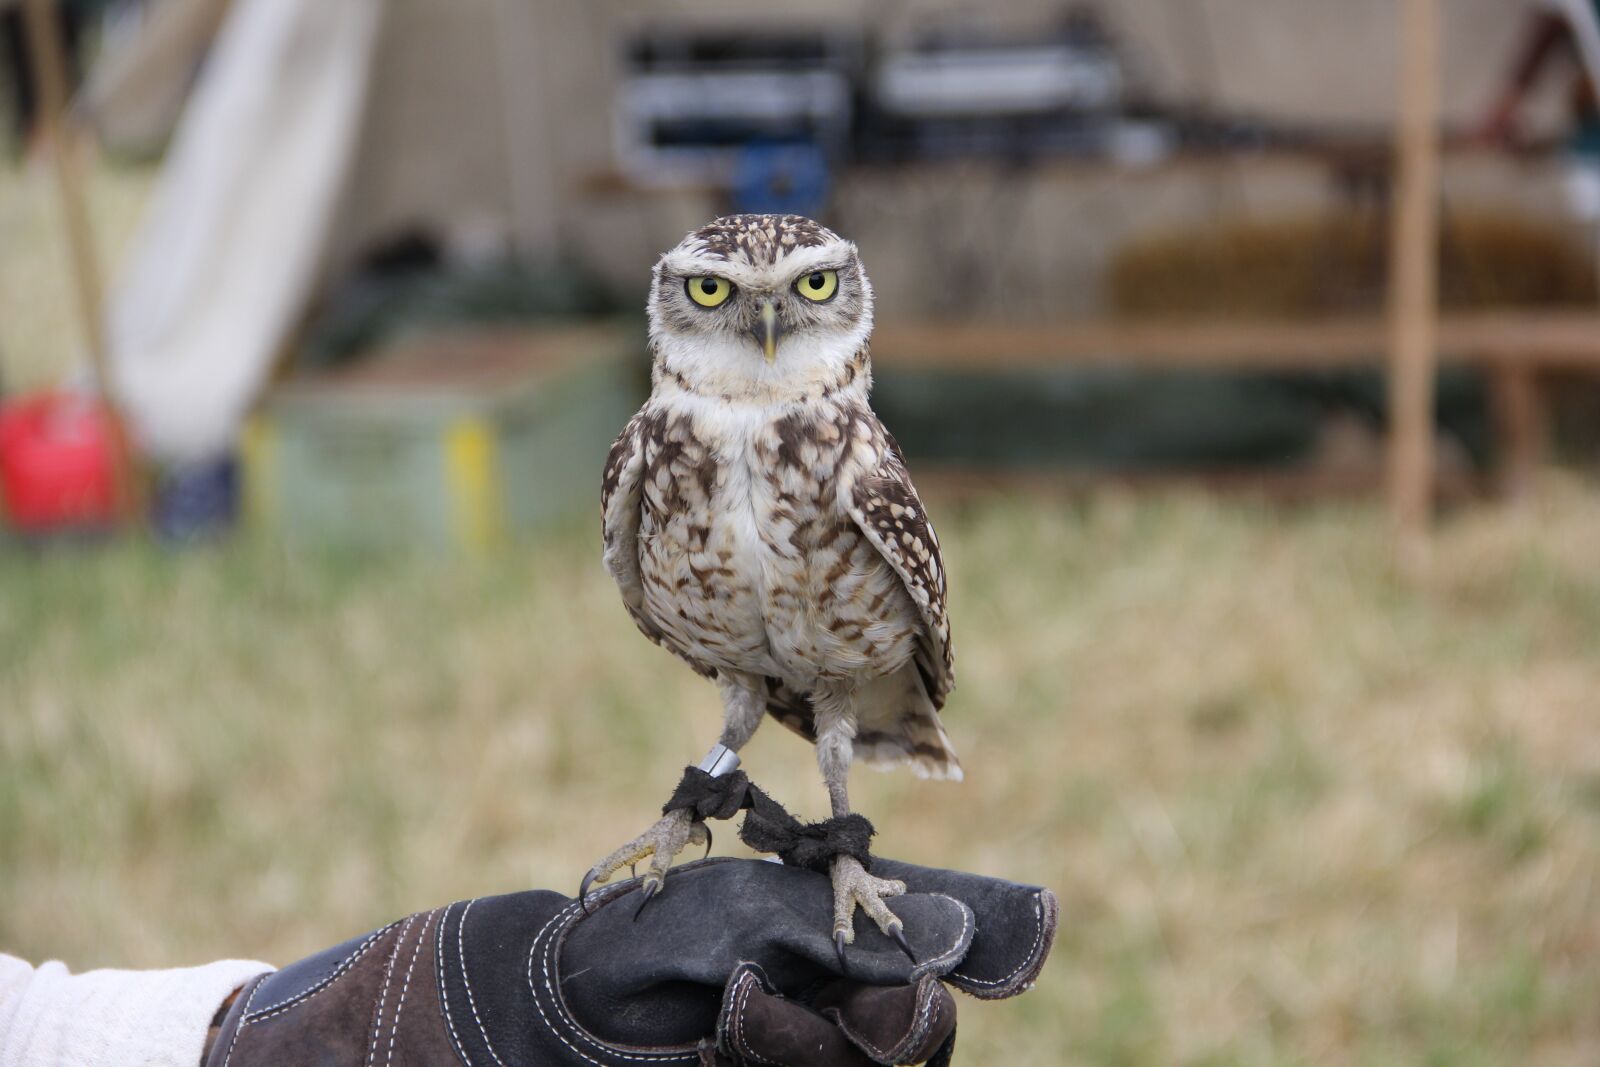 Canon EOS 60D sample photo. Owl, bird, falconry photography